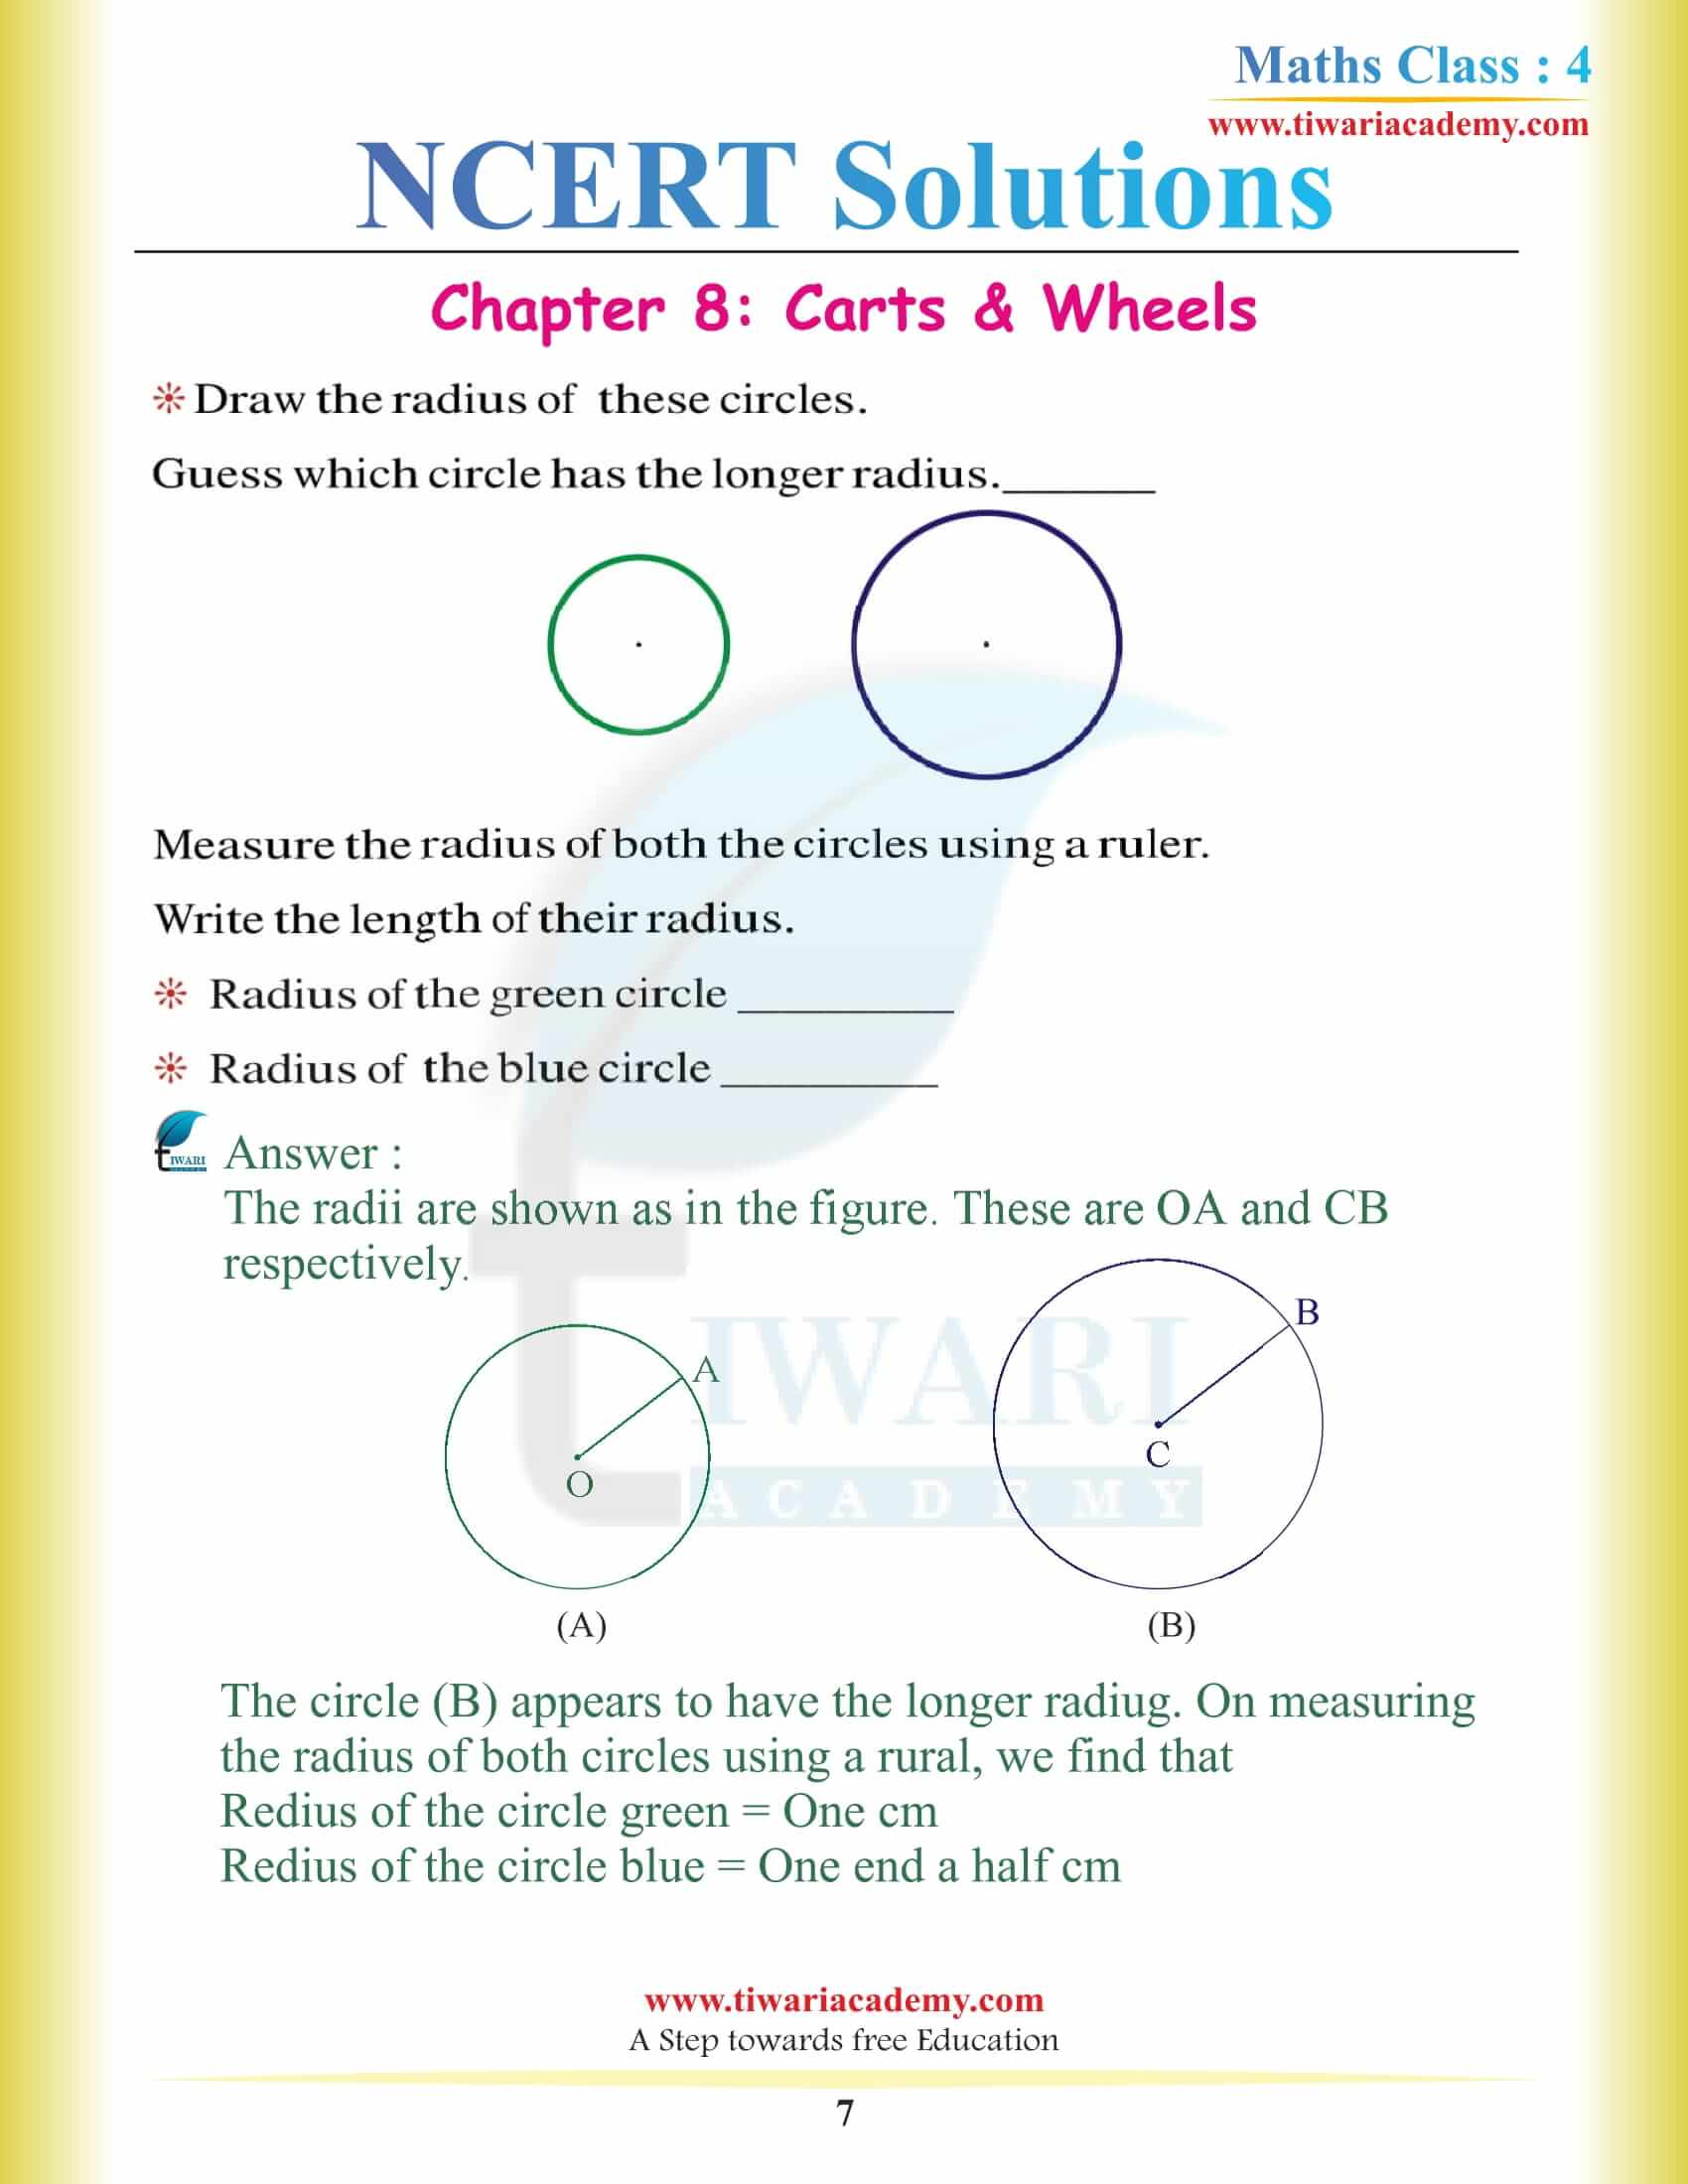 Class 4 Maths NCERT Chapter 8 Solutions